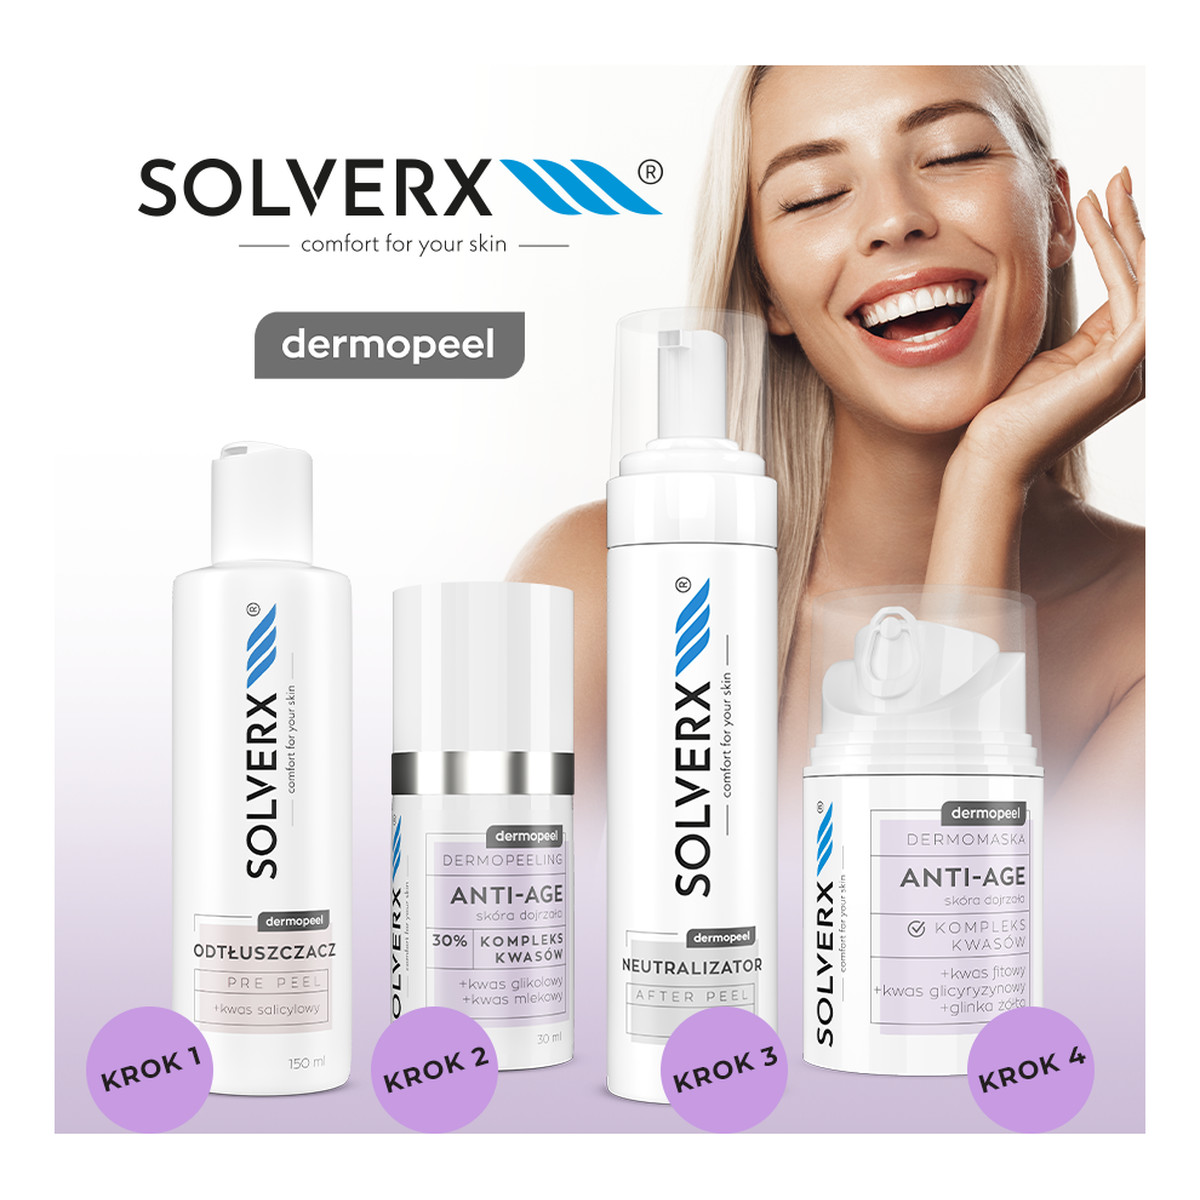 Solverx Dermopeel Dermopeeling Anti-Acne - Kompleks Kwasów 20% (azelainowy, laktobionowy) 30ml